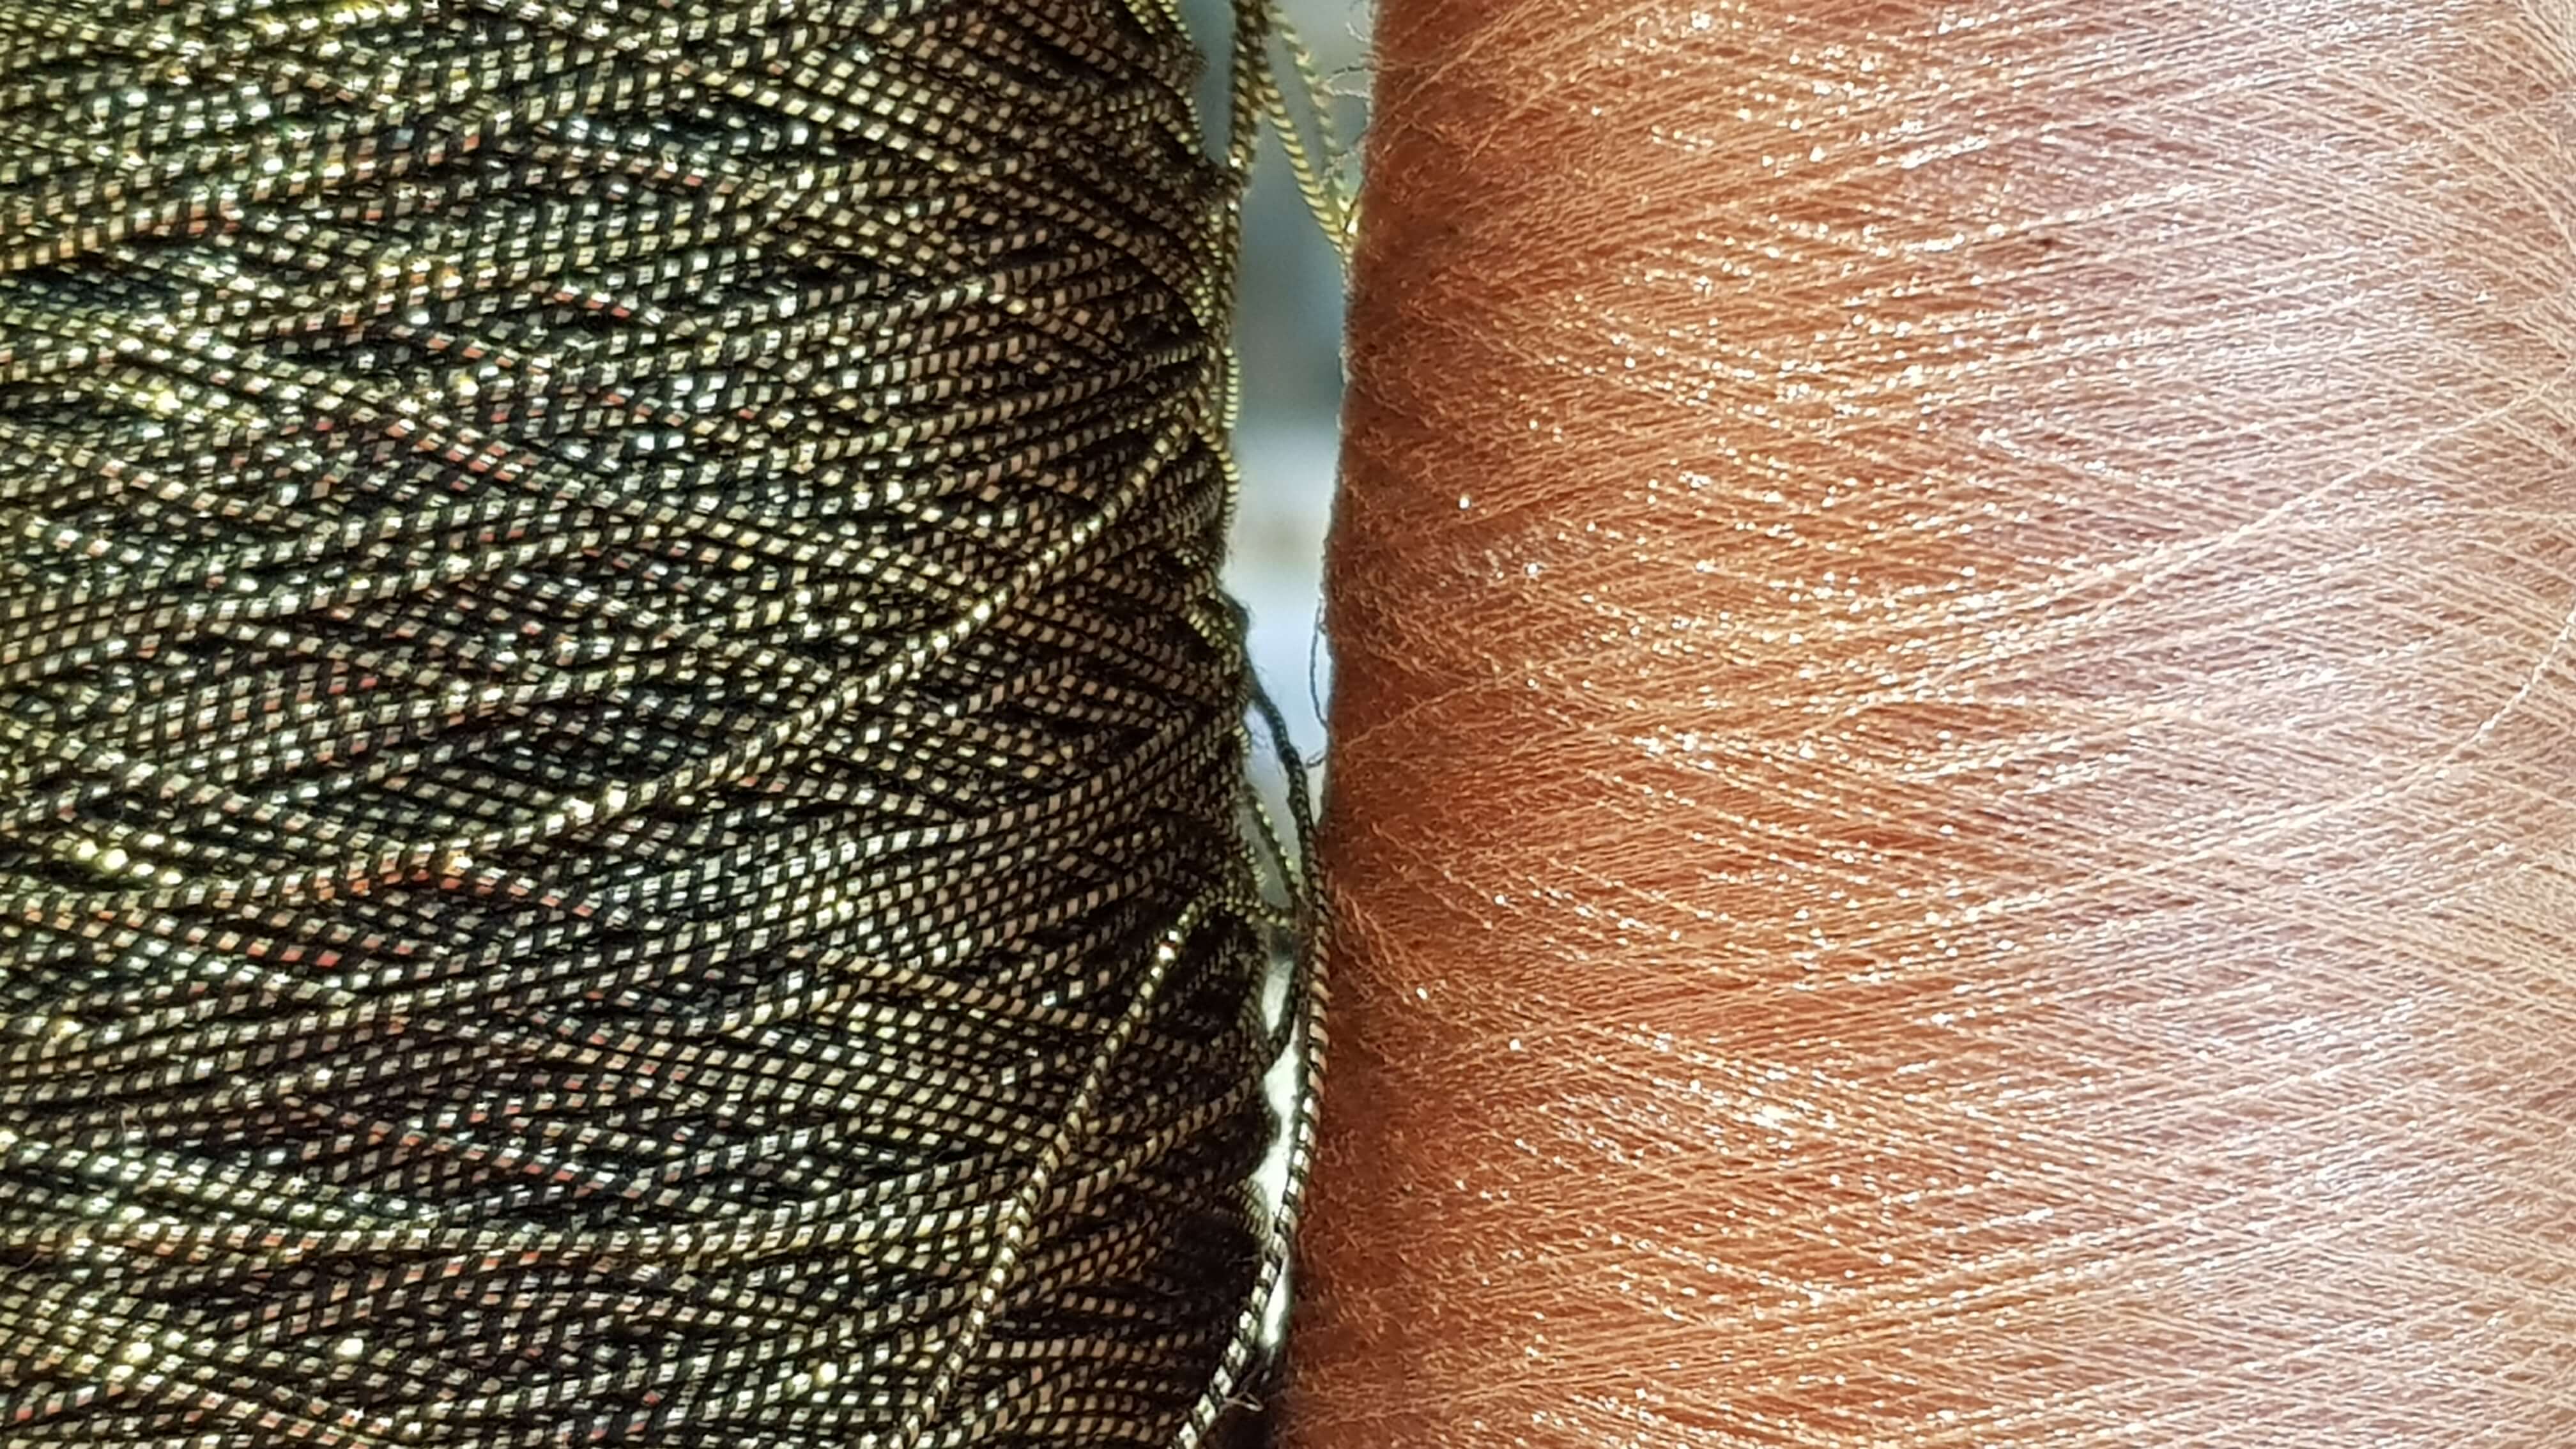 Egyptio versus copper thread